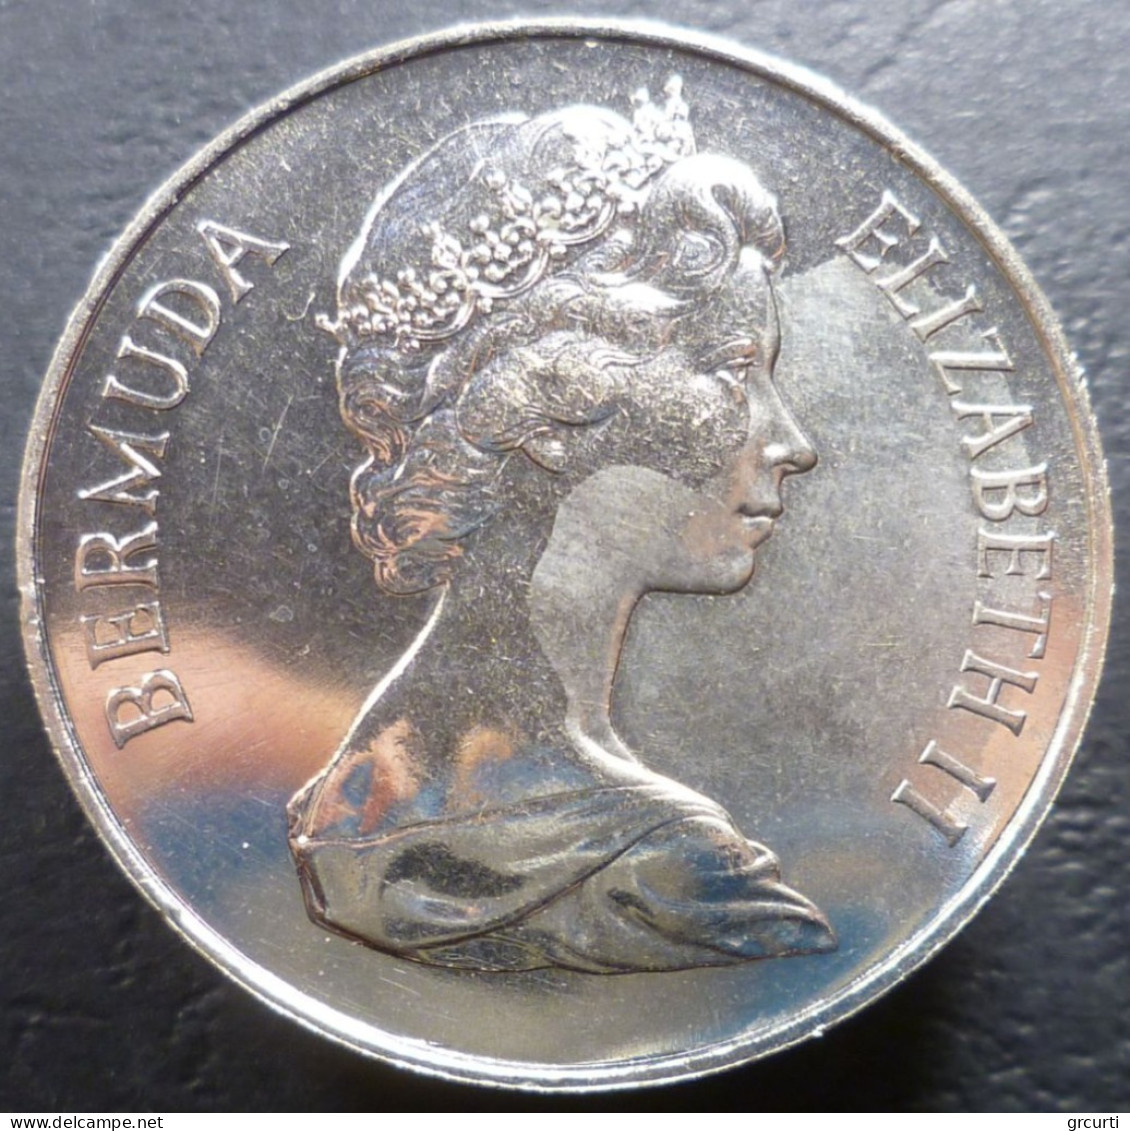 Bermuda - 1 Dollar 1981 - Matrimonio Fra Principe Carlo E Lady Diana - KM# 28 - Bermudas